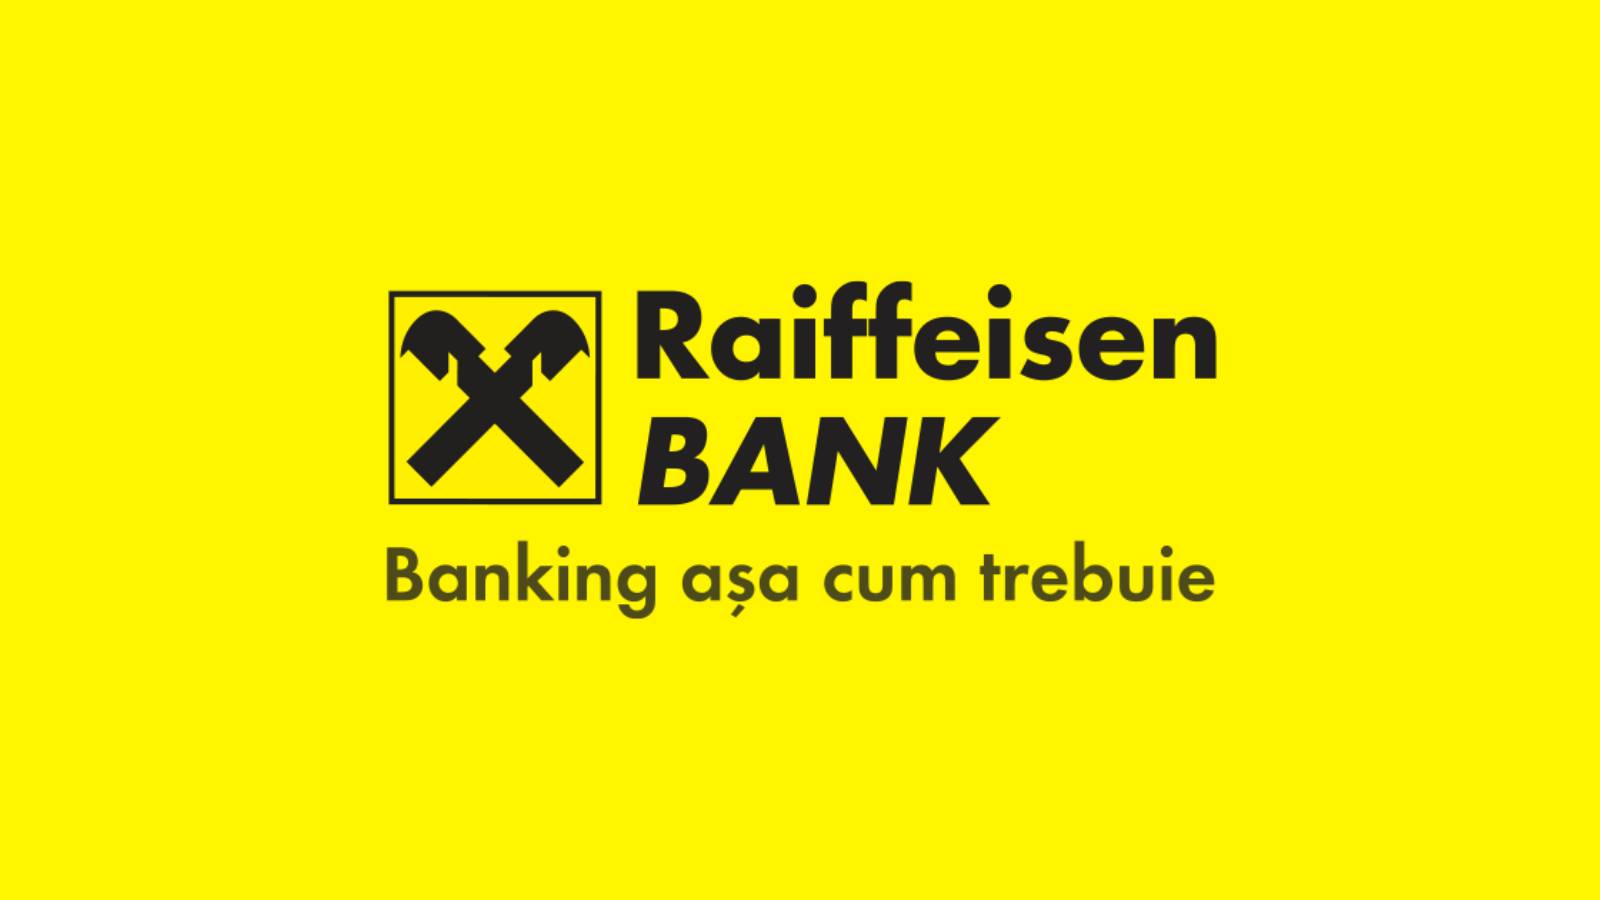 Raiffeisen Bank oficjalnie ogłosił decyzję, która ma wpływ na klientów